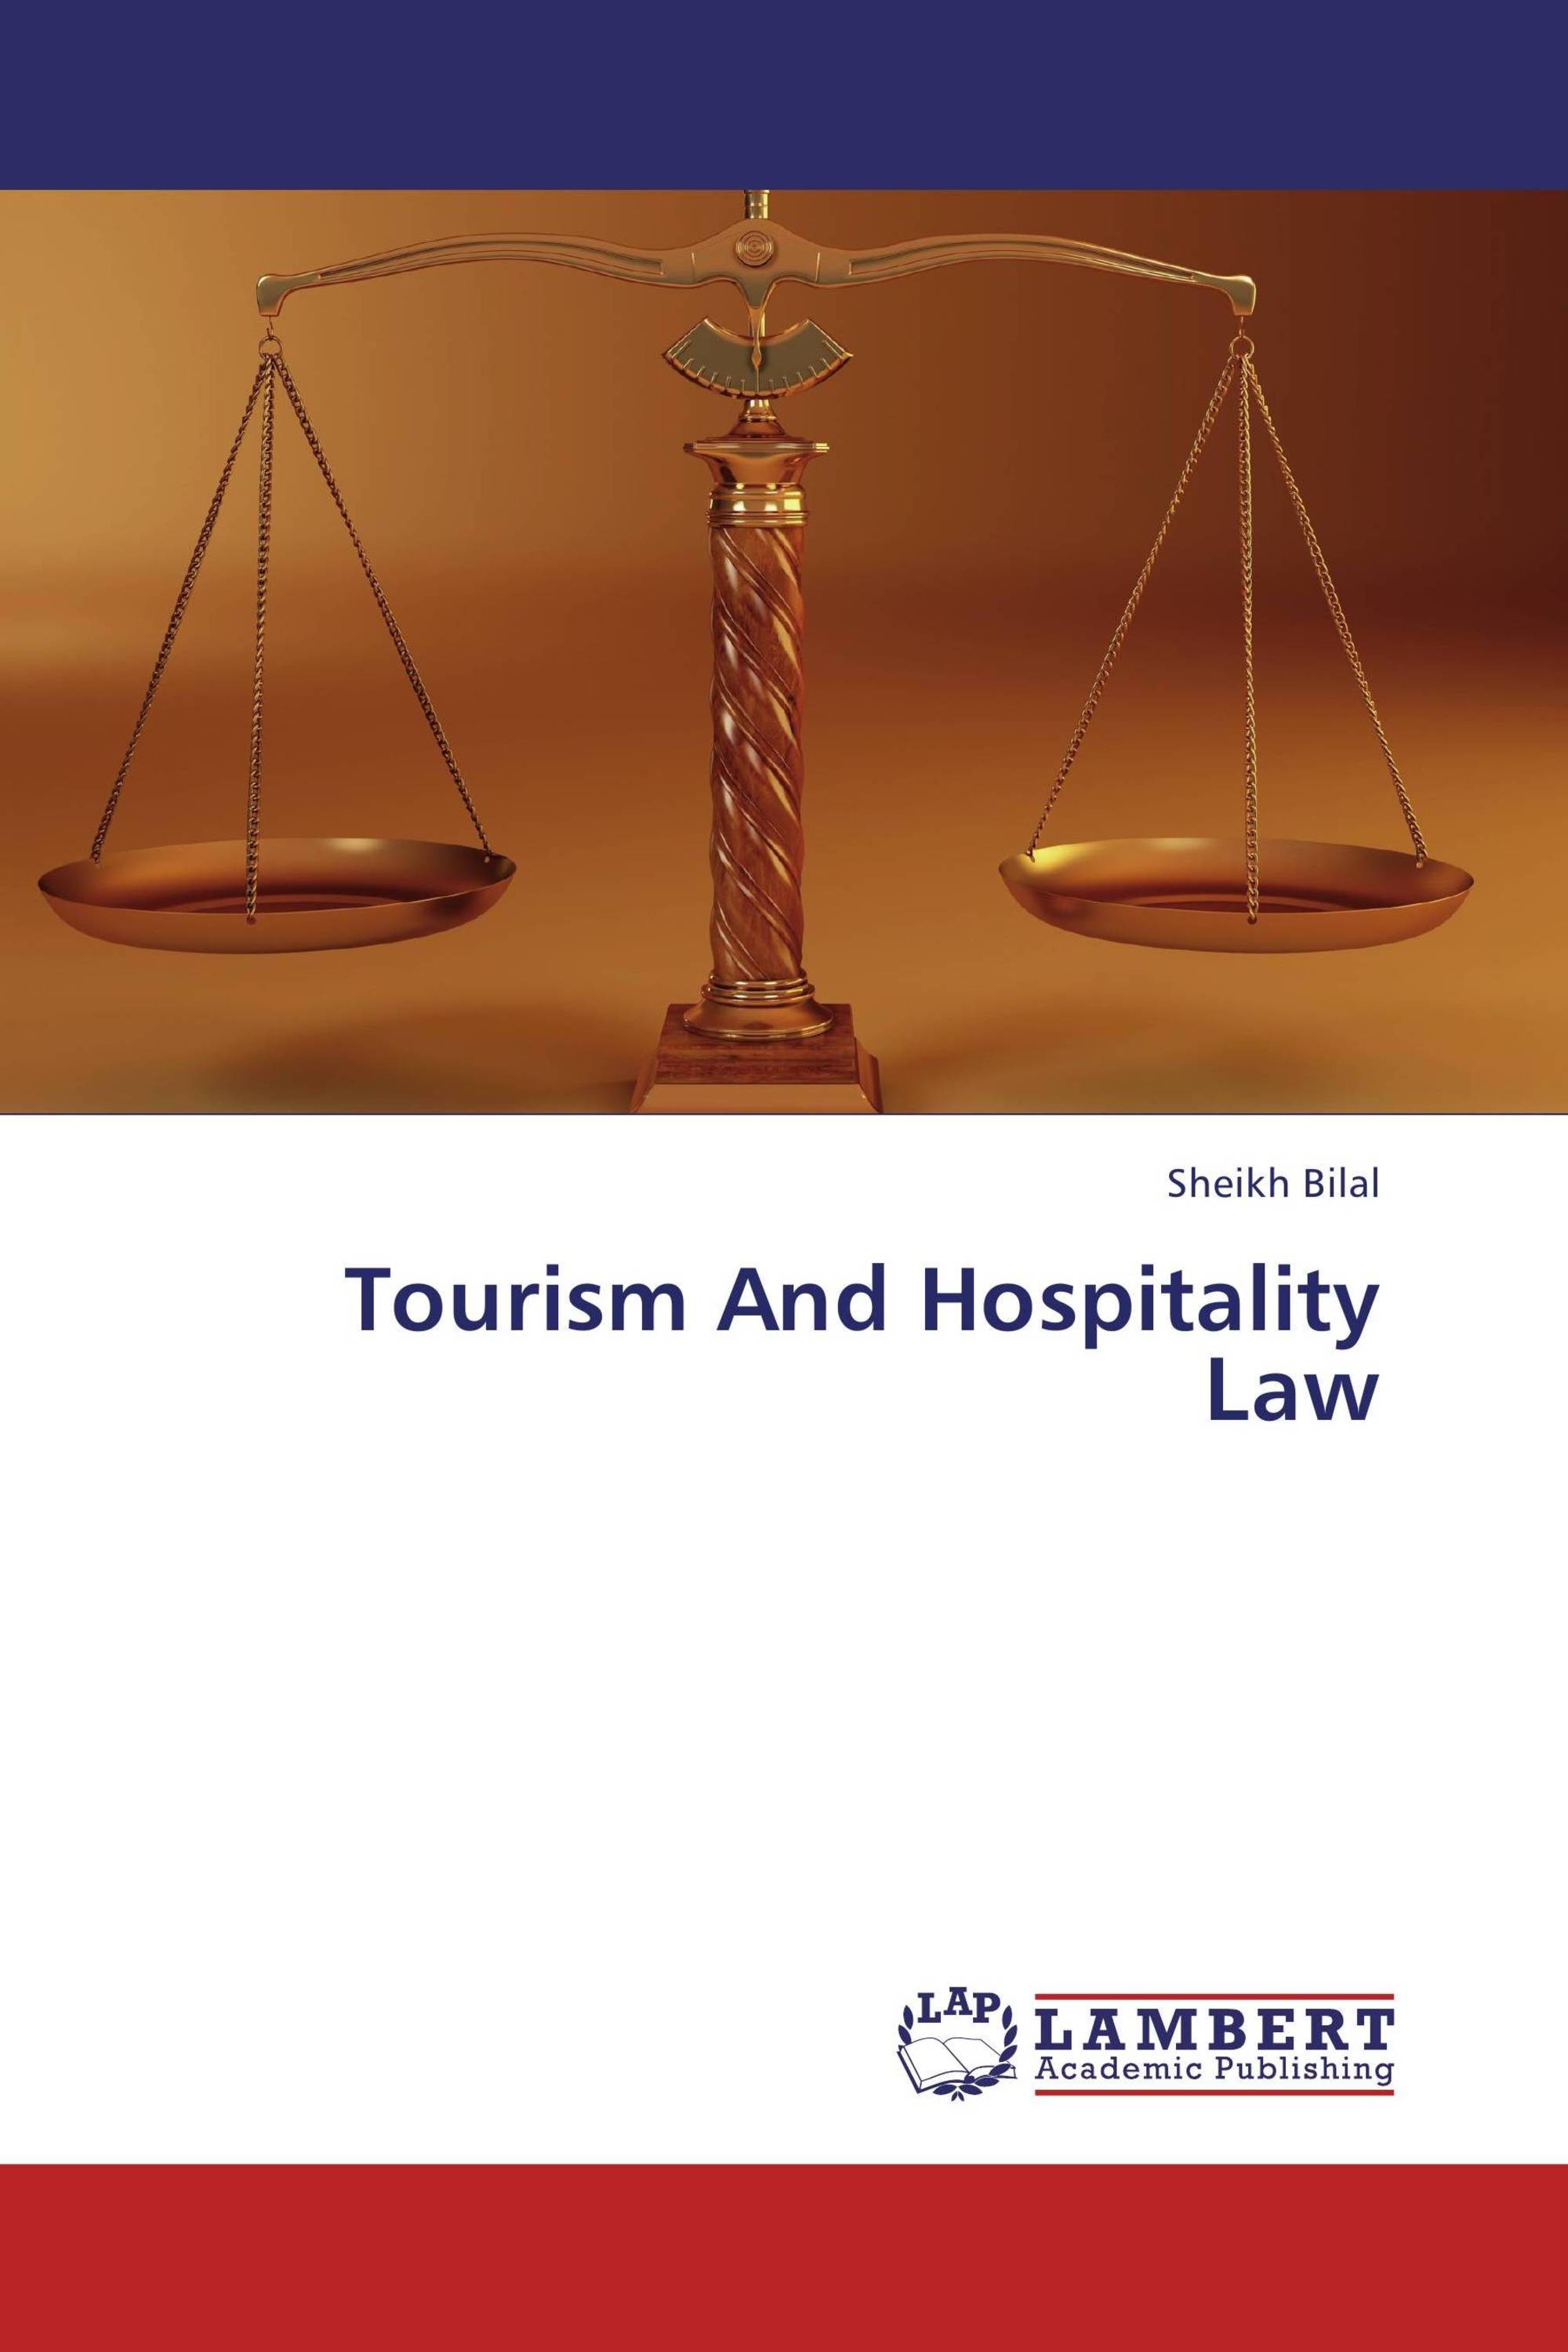 tourism law course